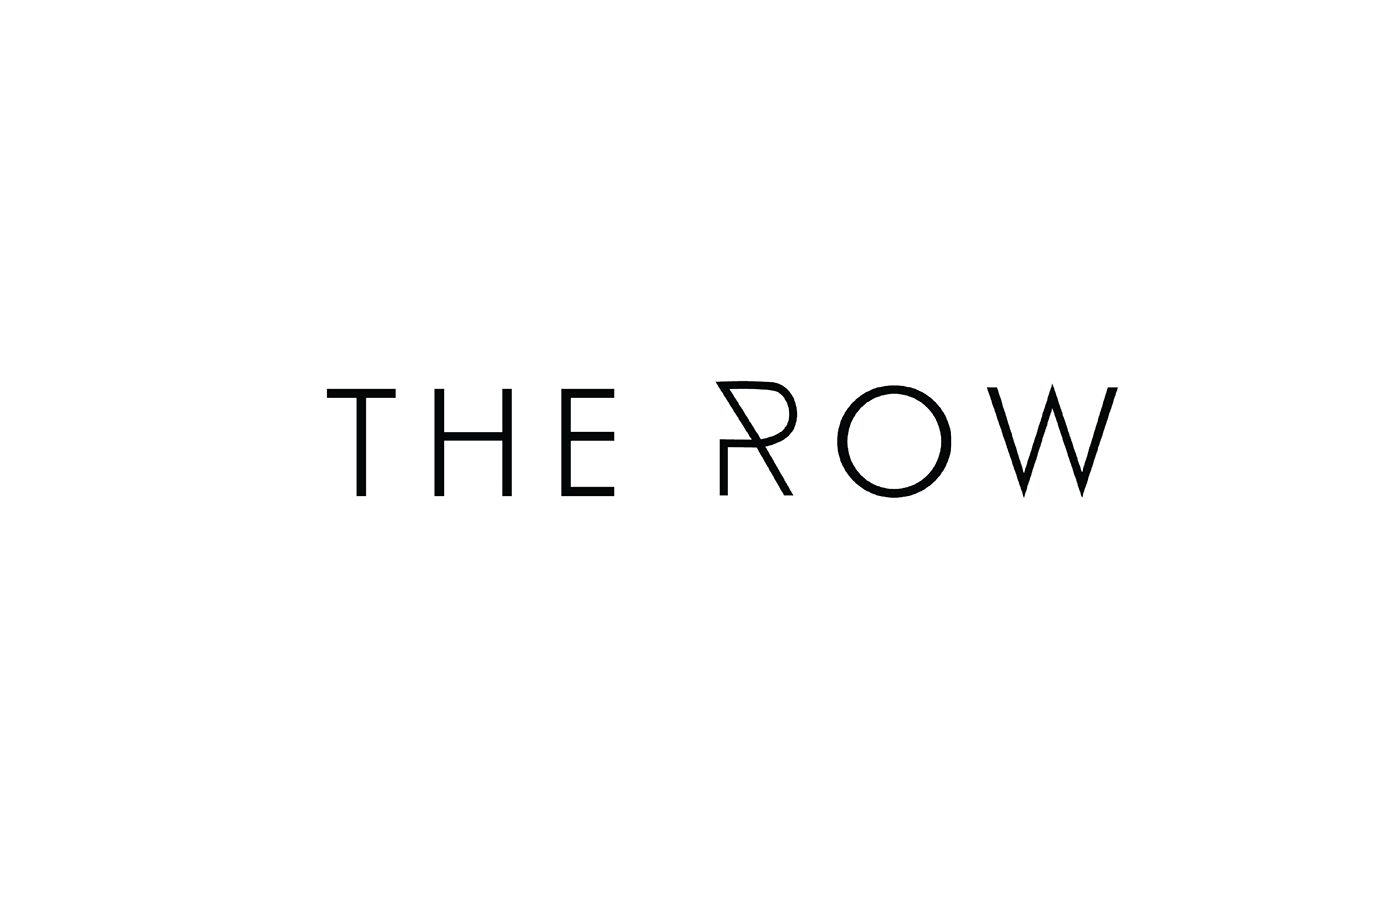 The row us